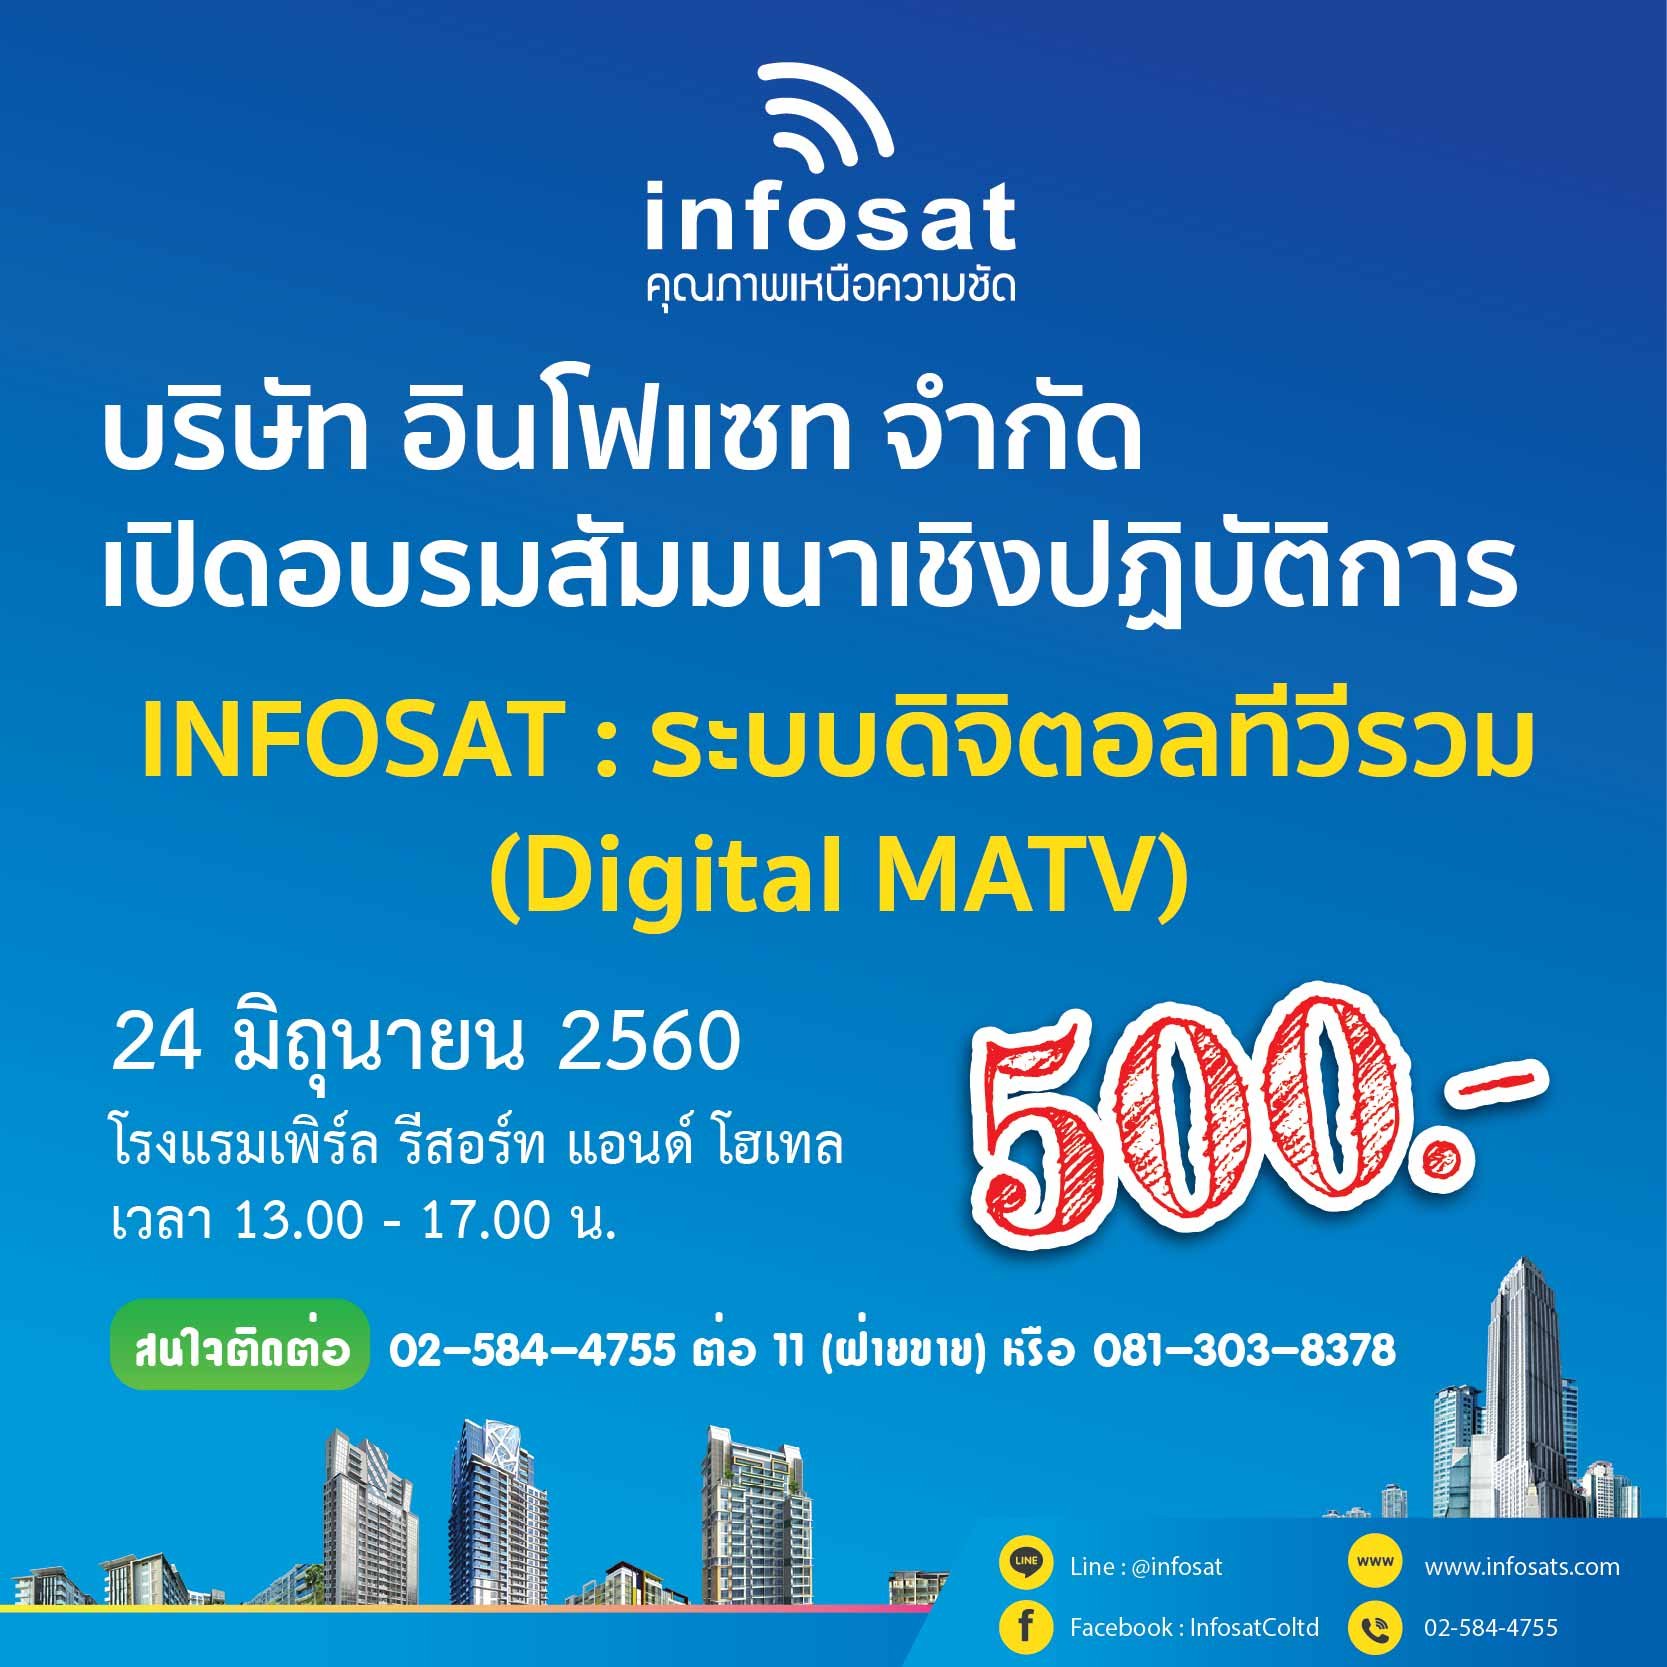 บริษัท อินโฟแซท จำกัด เปิดอบรมสัมมนาเชิงปฏิบัติการ INFOSAT : ระบบดิจิตอลทีวีรวม (Digital MATV)